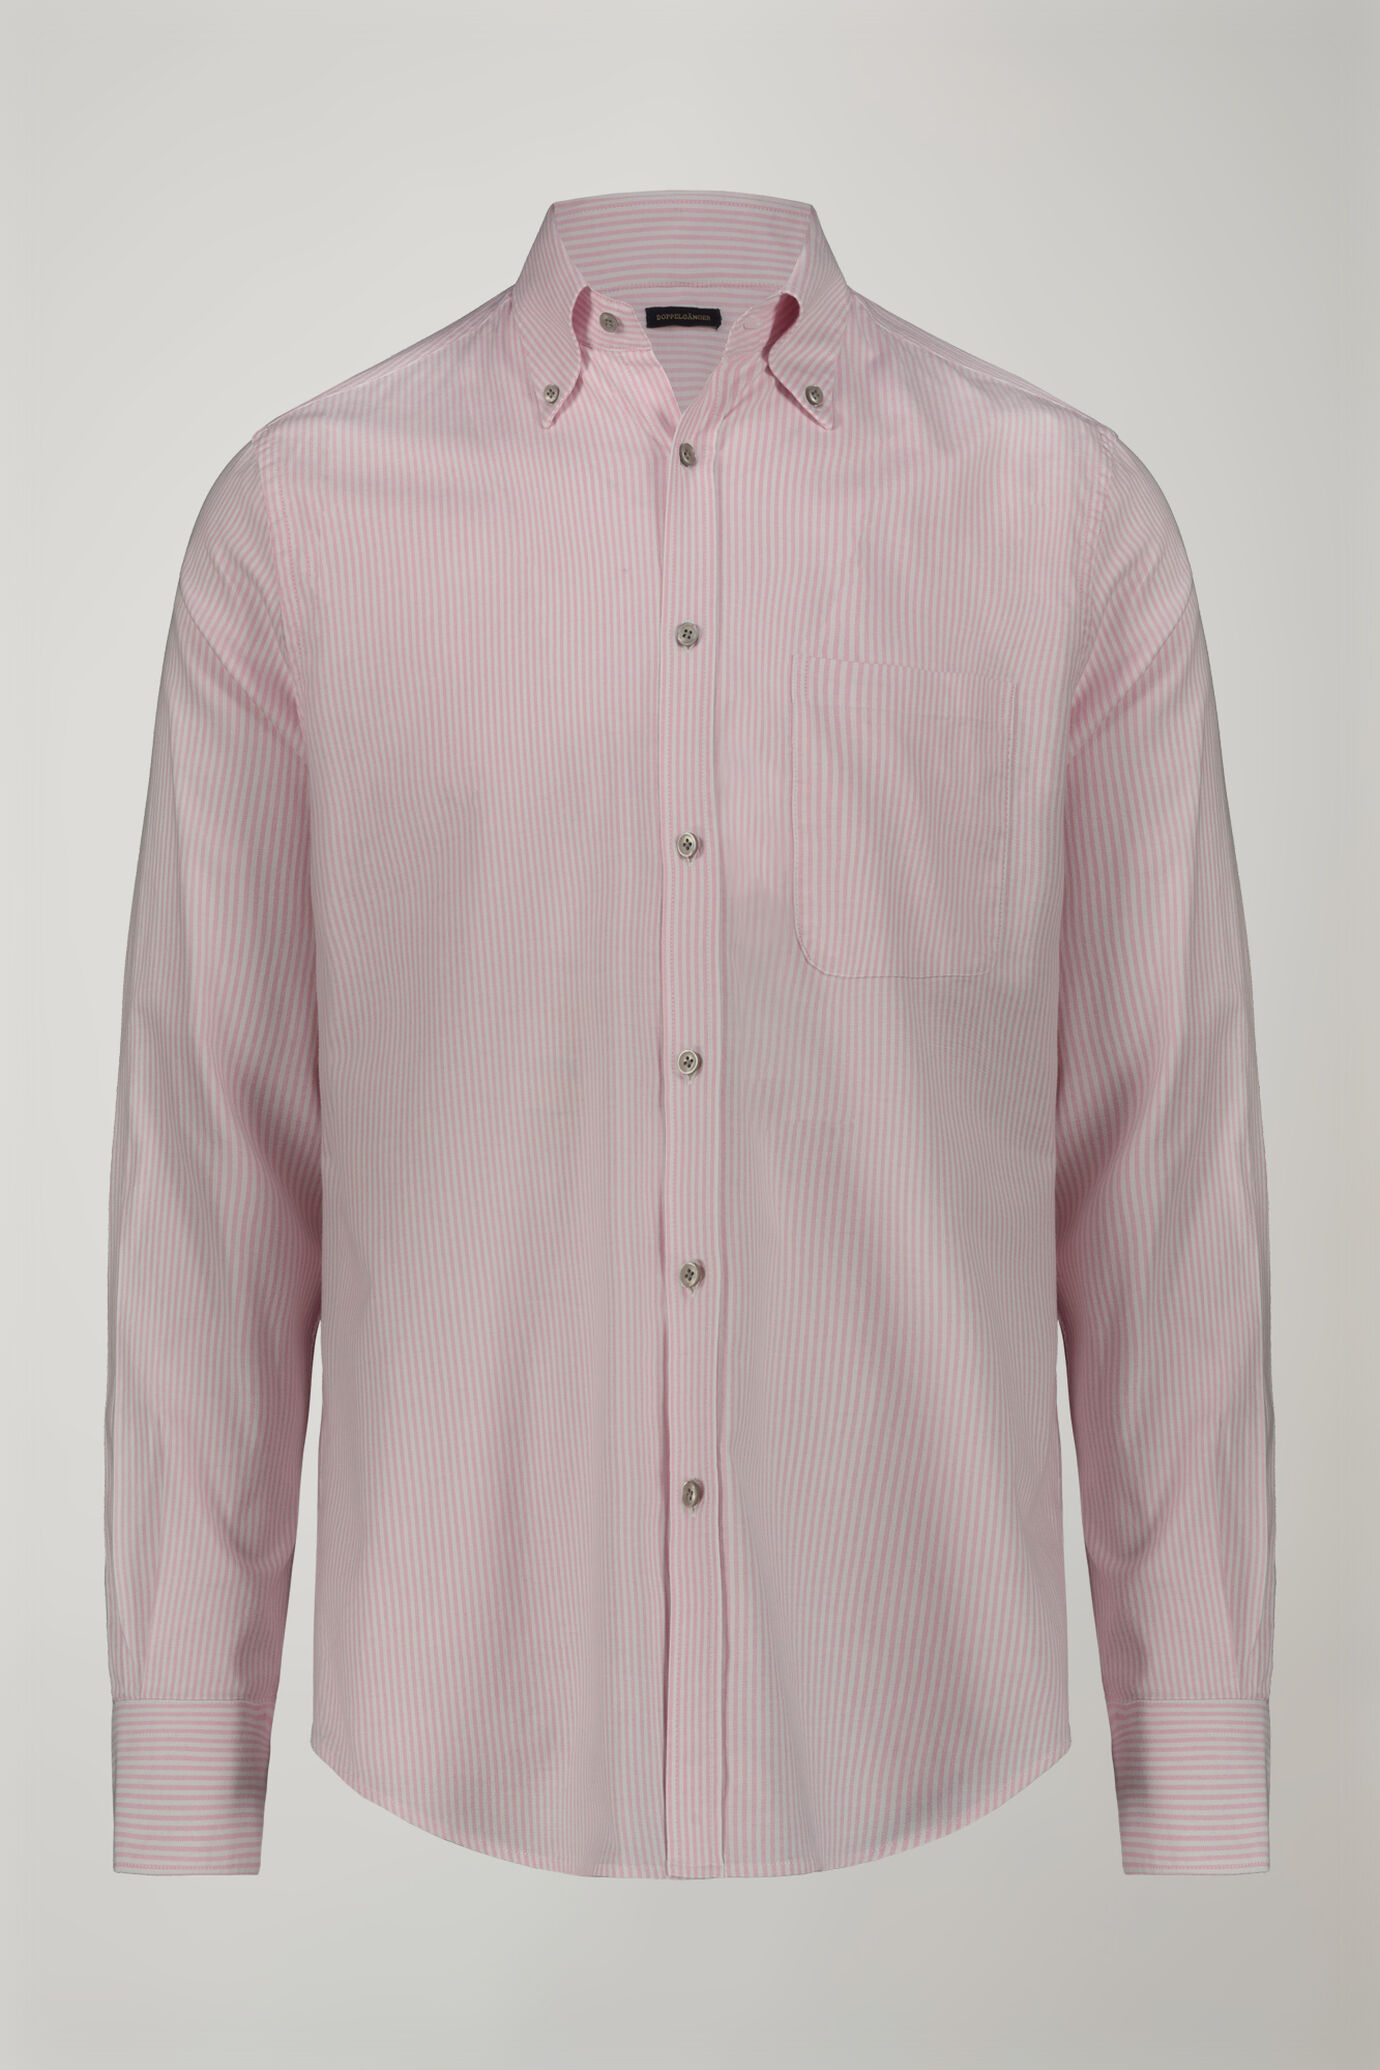 Camicia classica uomo collo button down tessuto Oxford rigato ultra leggero comfort fit image number 5